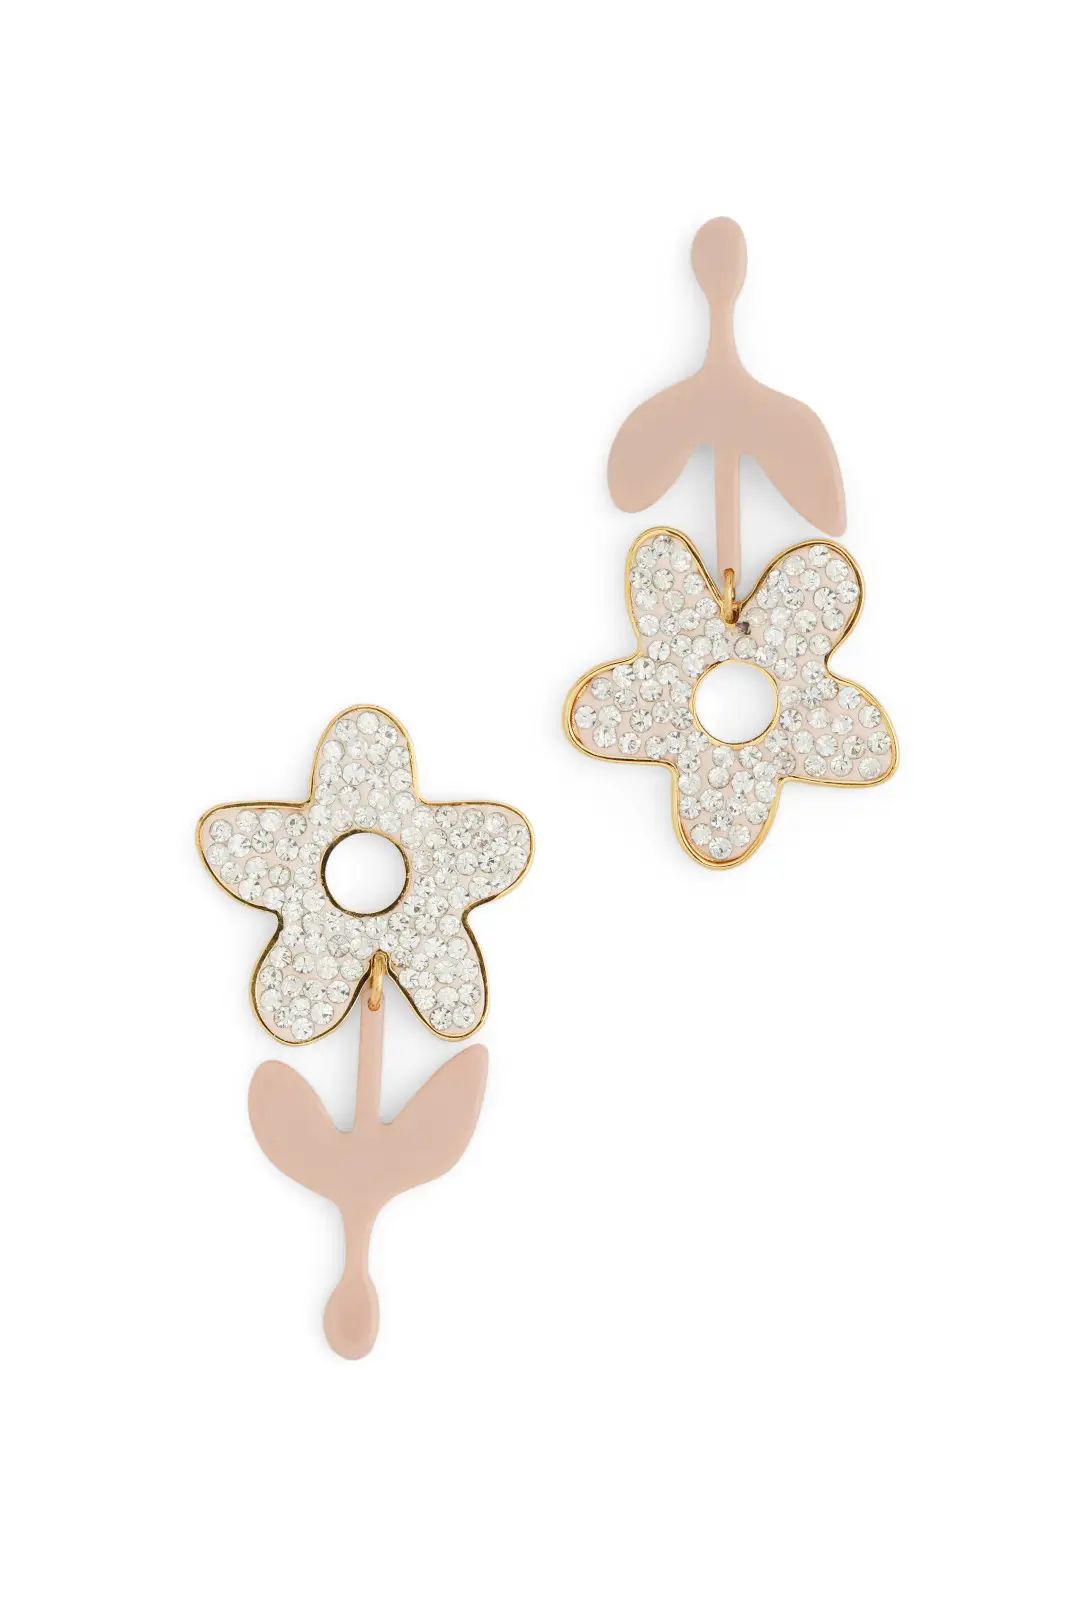 Lele Sadoughi Crystal Flower Stem Earrings | Rent the Runway